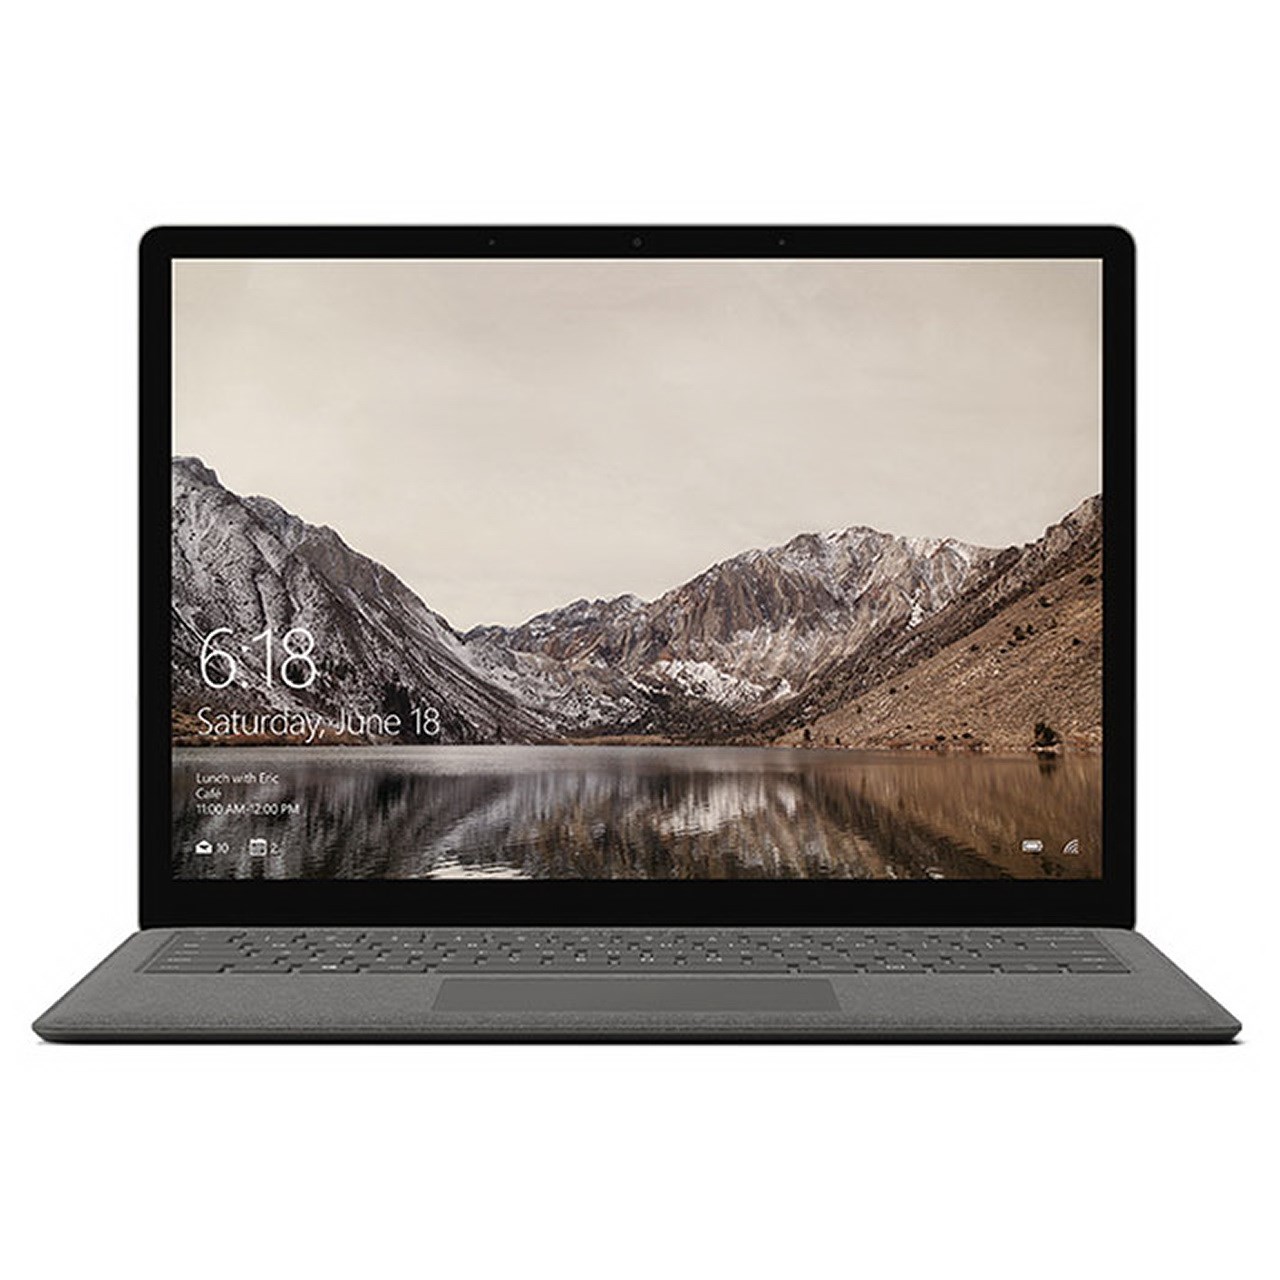 لپ تاپ 13 اینچی مایکروسافت مدل Surface Laptop Graphite Gold - P